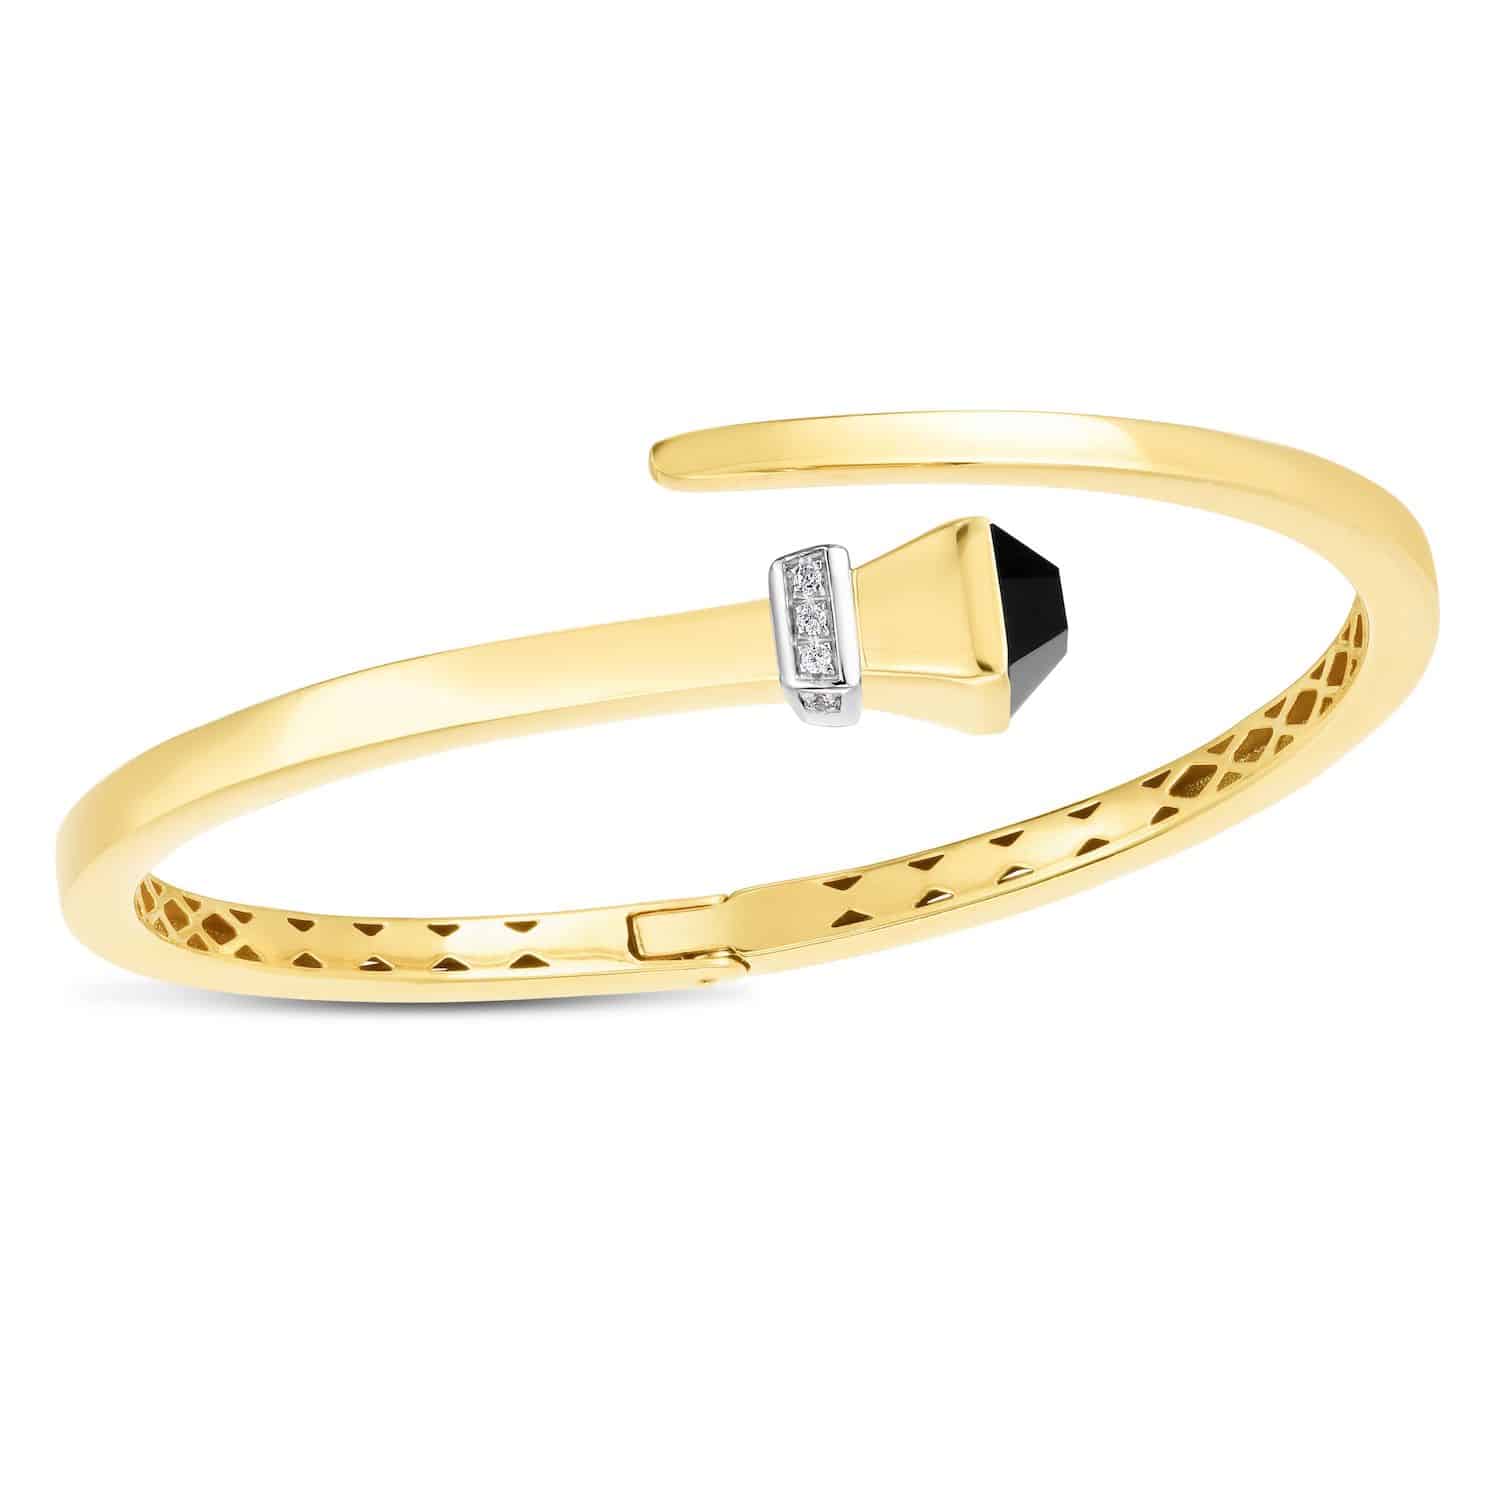 Natural Diamond 14K Yellow Gold Onyx Turquoise Wrap Hinged Bangle Bracelet 7.5" - Onyx